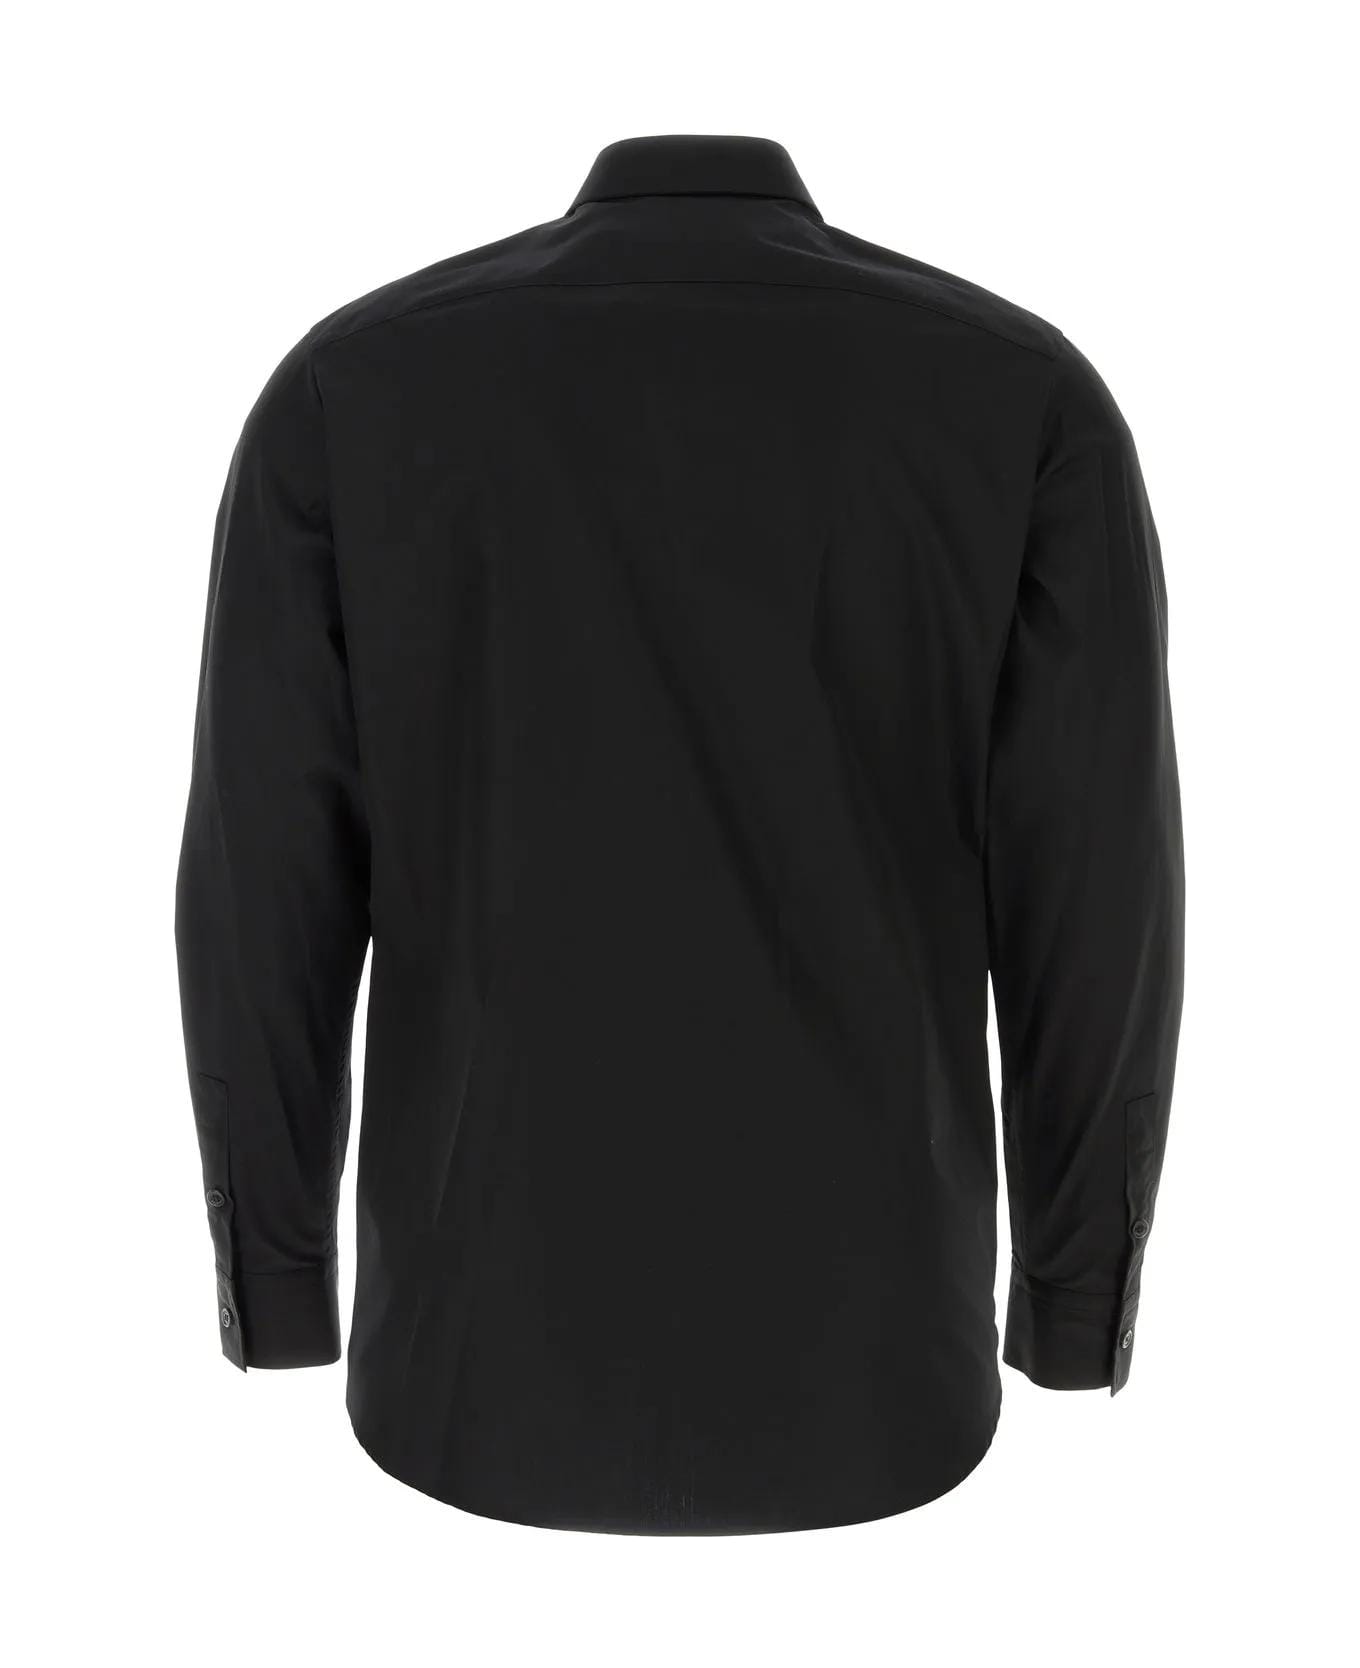 Balmain Black Poplin Shirt - 0PANOIR シャツ